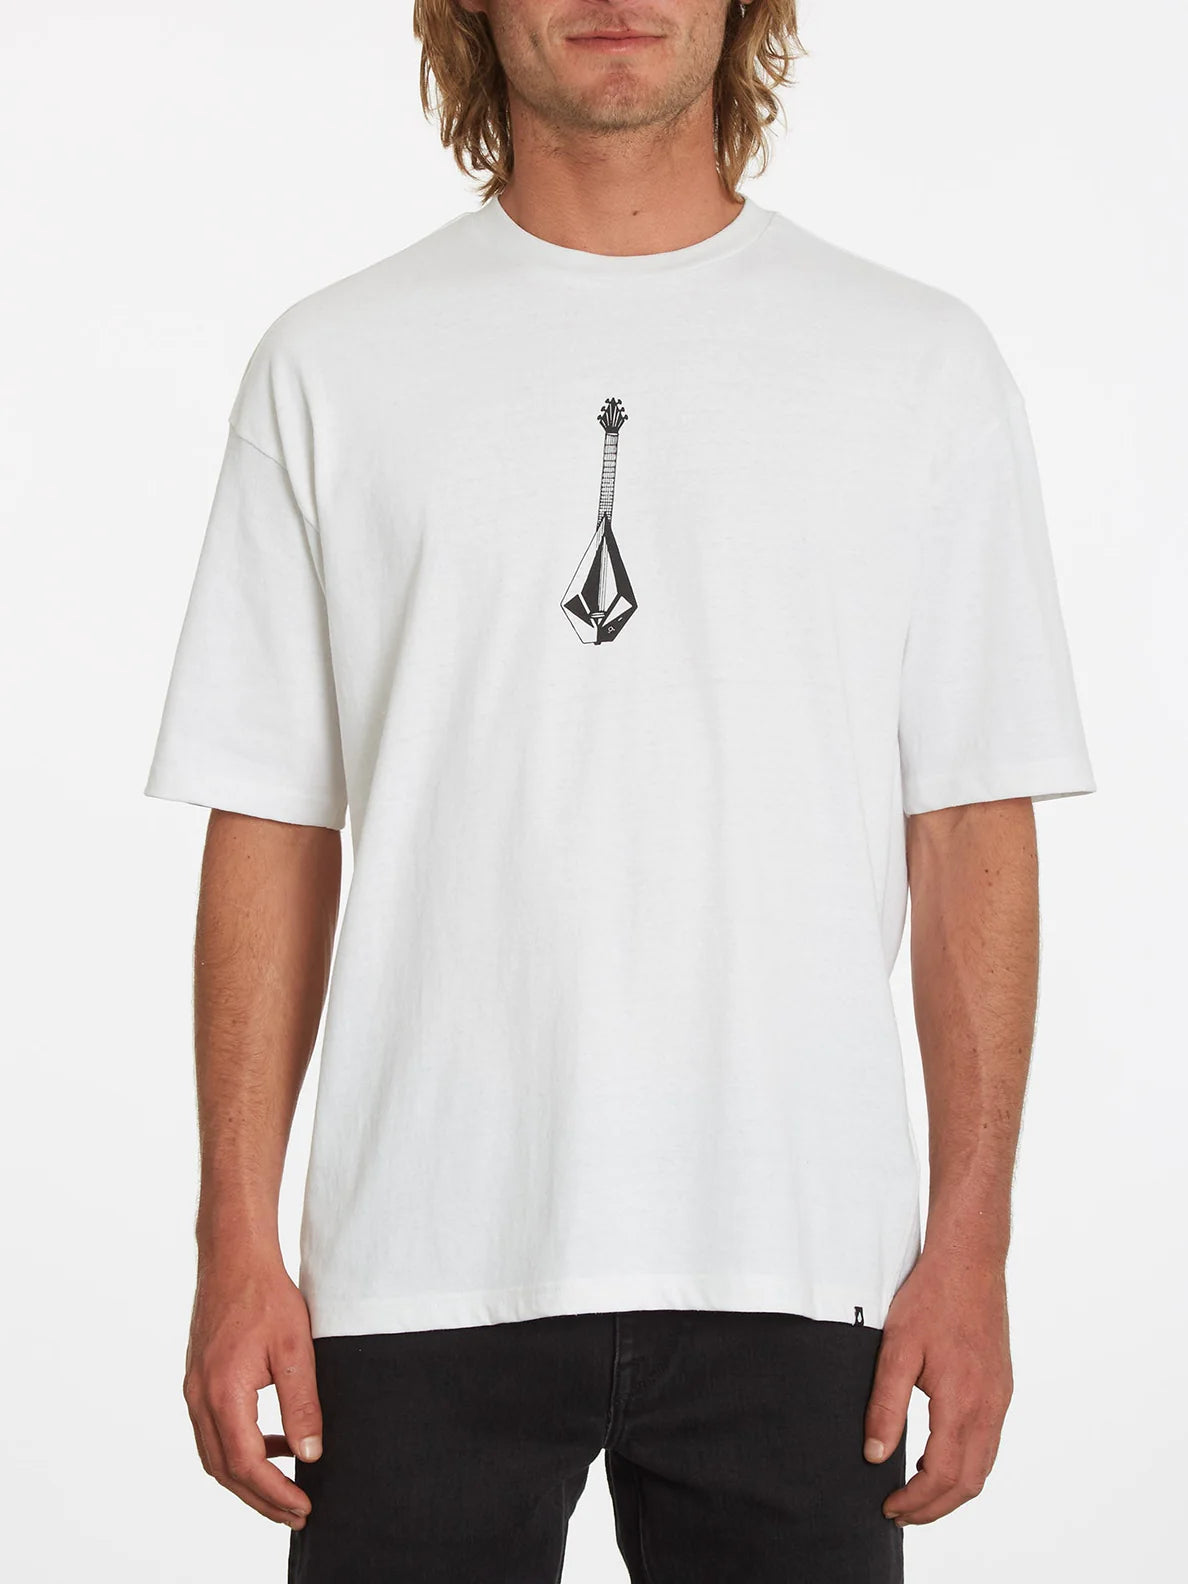 Camiseta Volcom Shredead White | Camisetas de hombre | Camisetas manga corta de hombre | Volcom Shop | surfdevils.com